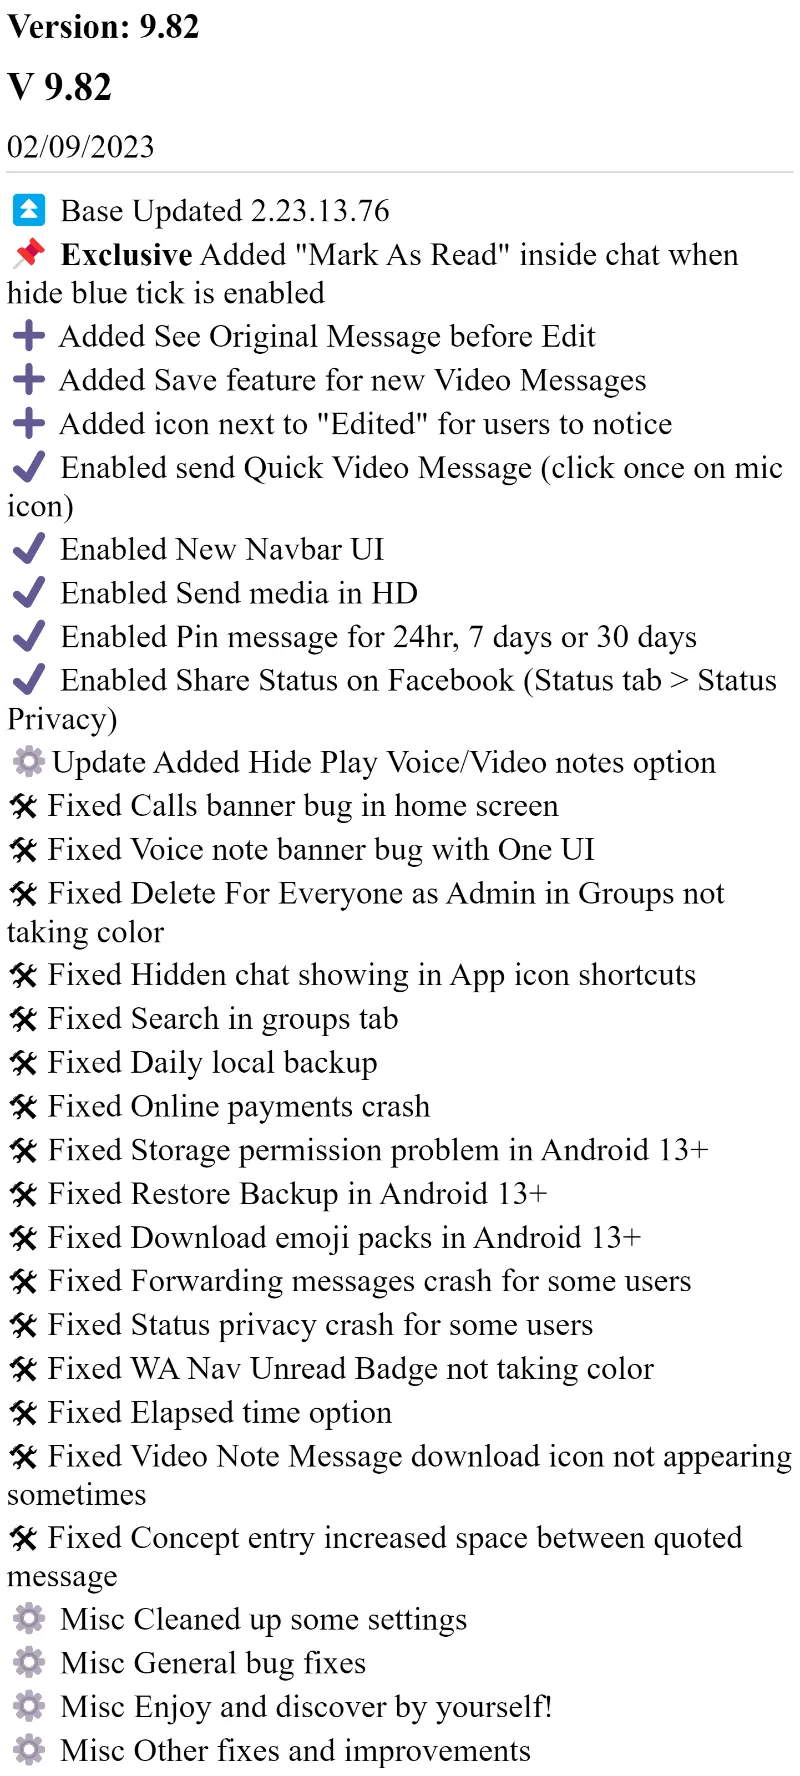 Blue WhatsApp Plus APK v9.82 Changelog